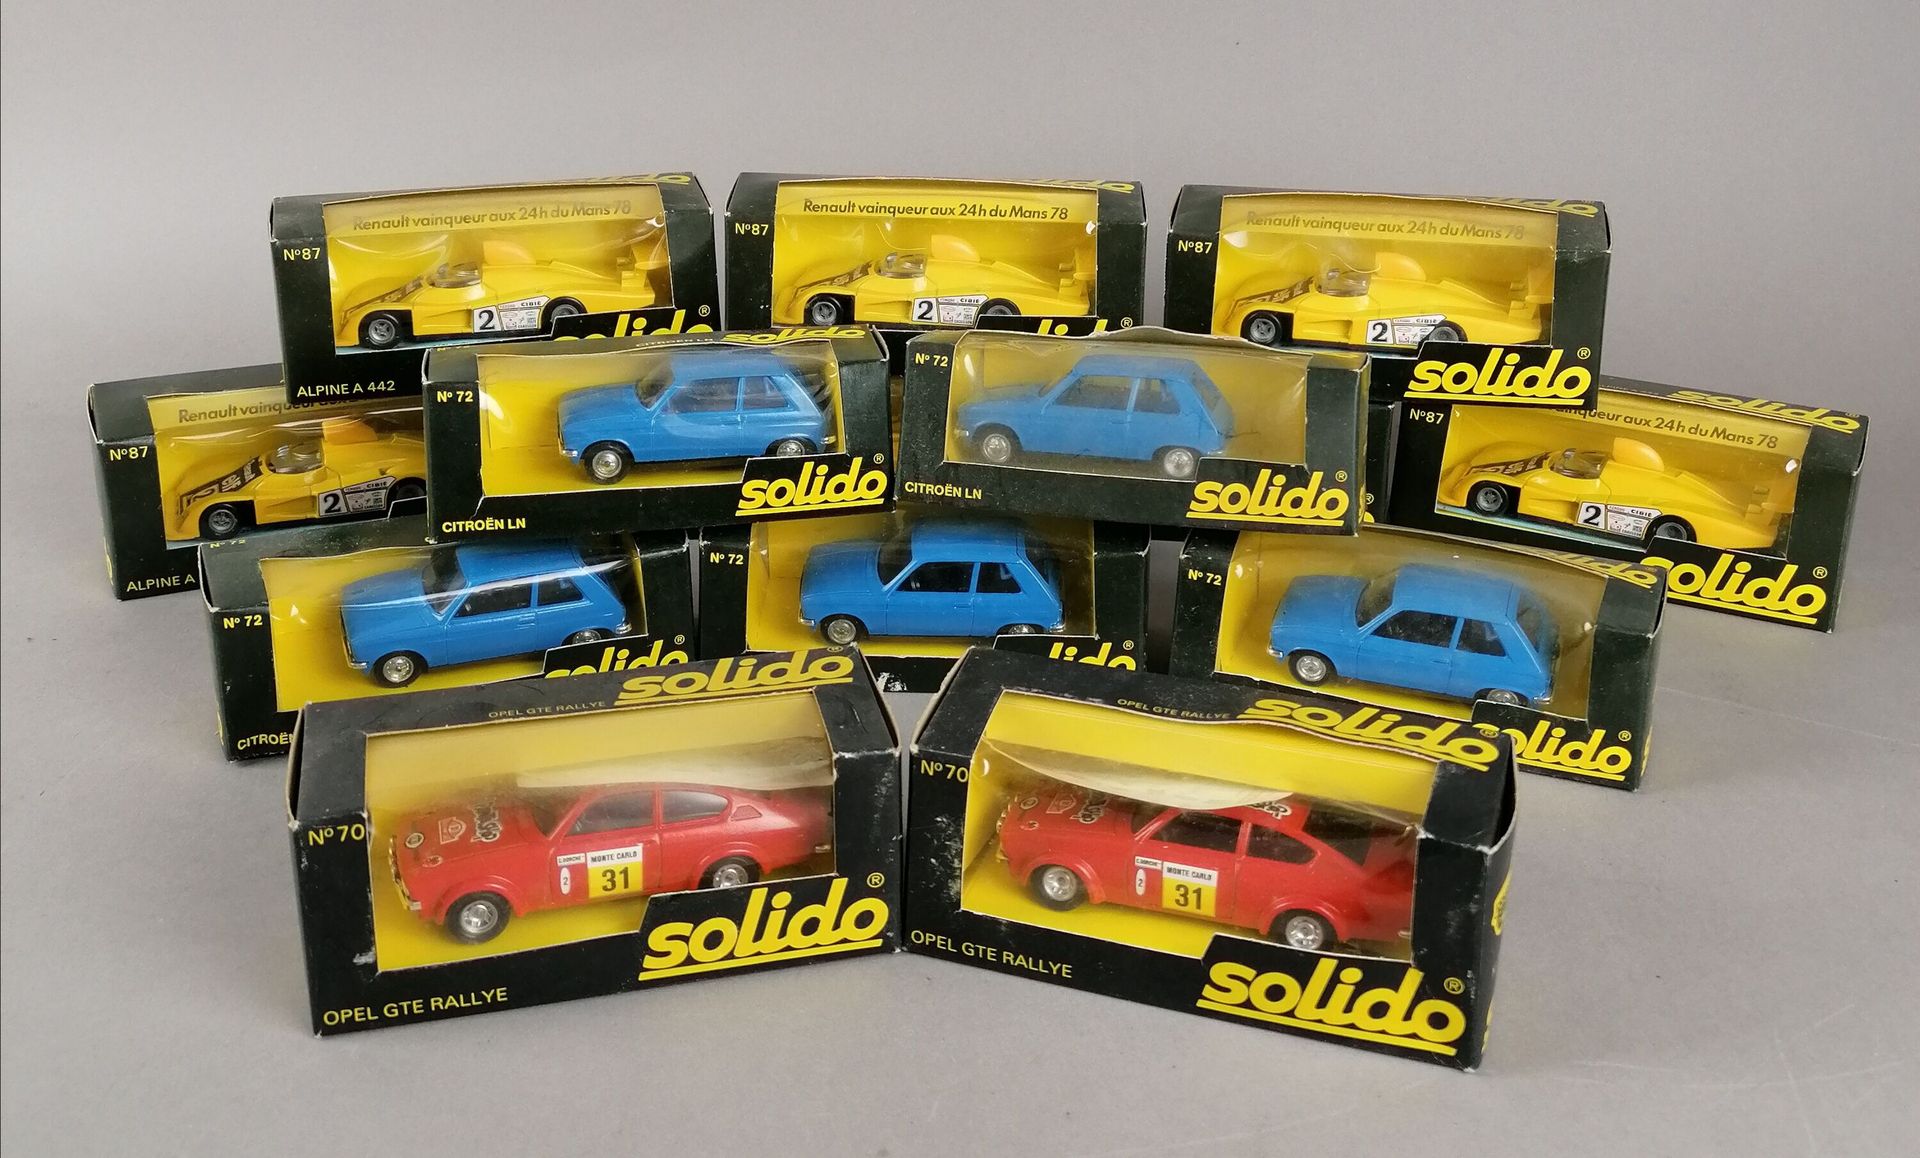 Null SOLIDO - 16 vehículos, escala 1/43 en sus cajas originales:

9x Alpine A 44&hellip;